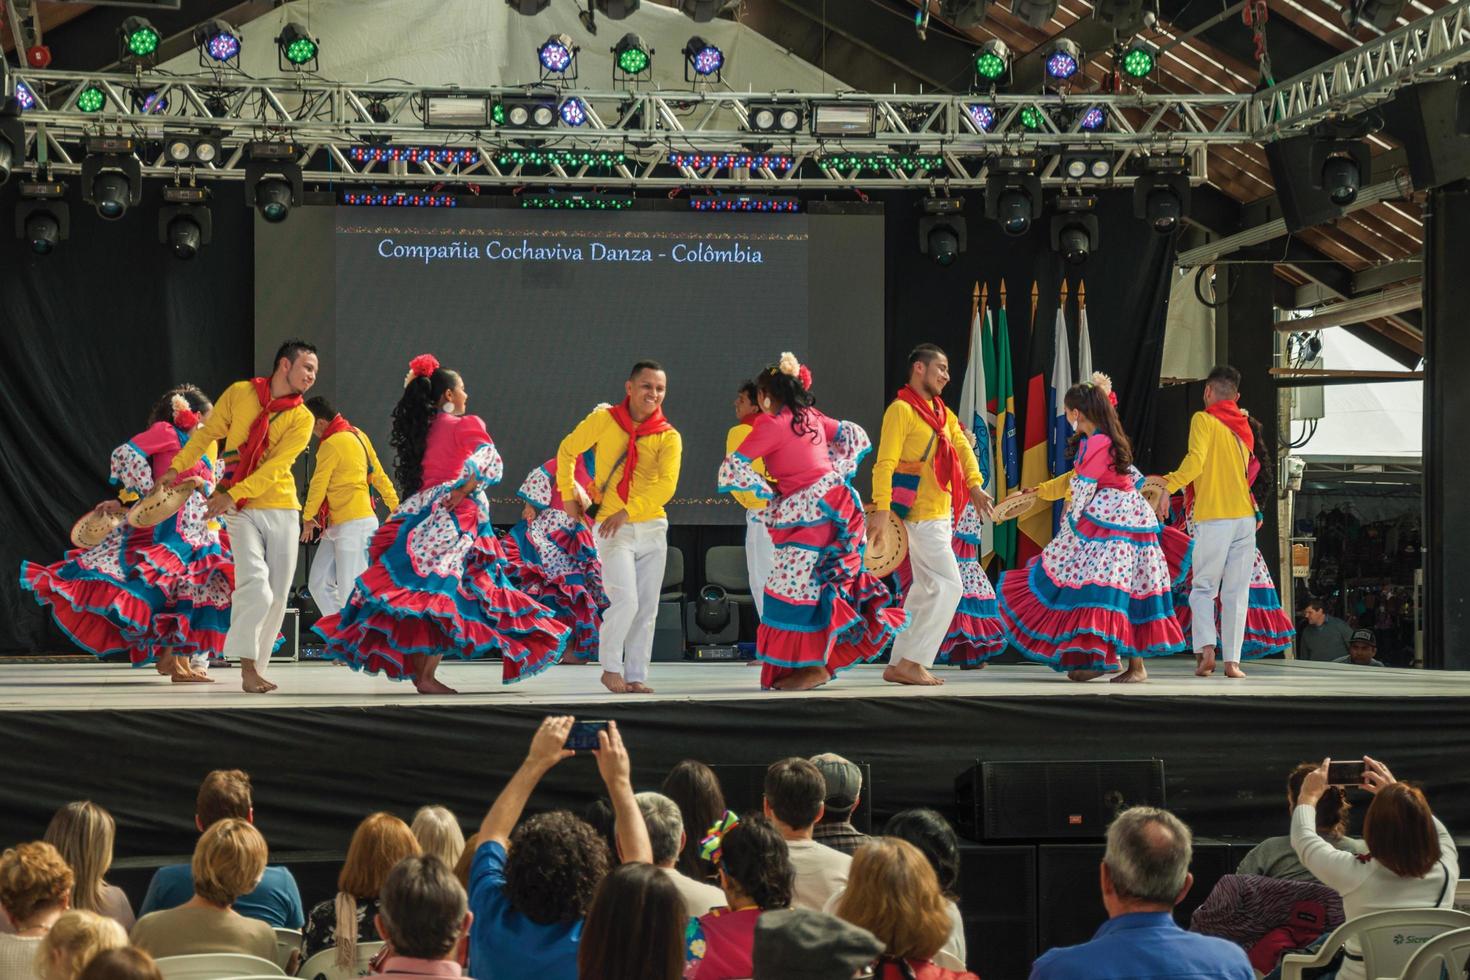 nova petropolis, brasile - 20 luglio 2019. ballerini folk colombiani che eseguono una danza tipica sul 47th festival internazionale del folklore di nova petropolis. una graziosa cittadina rurale fondata da immigrati tedeschi. foto